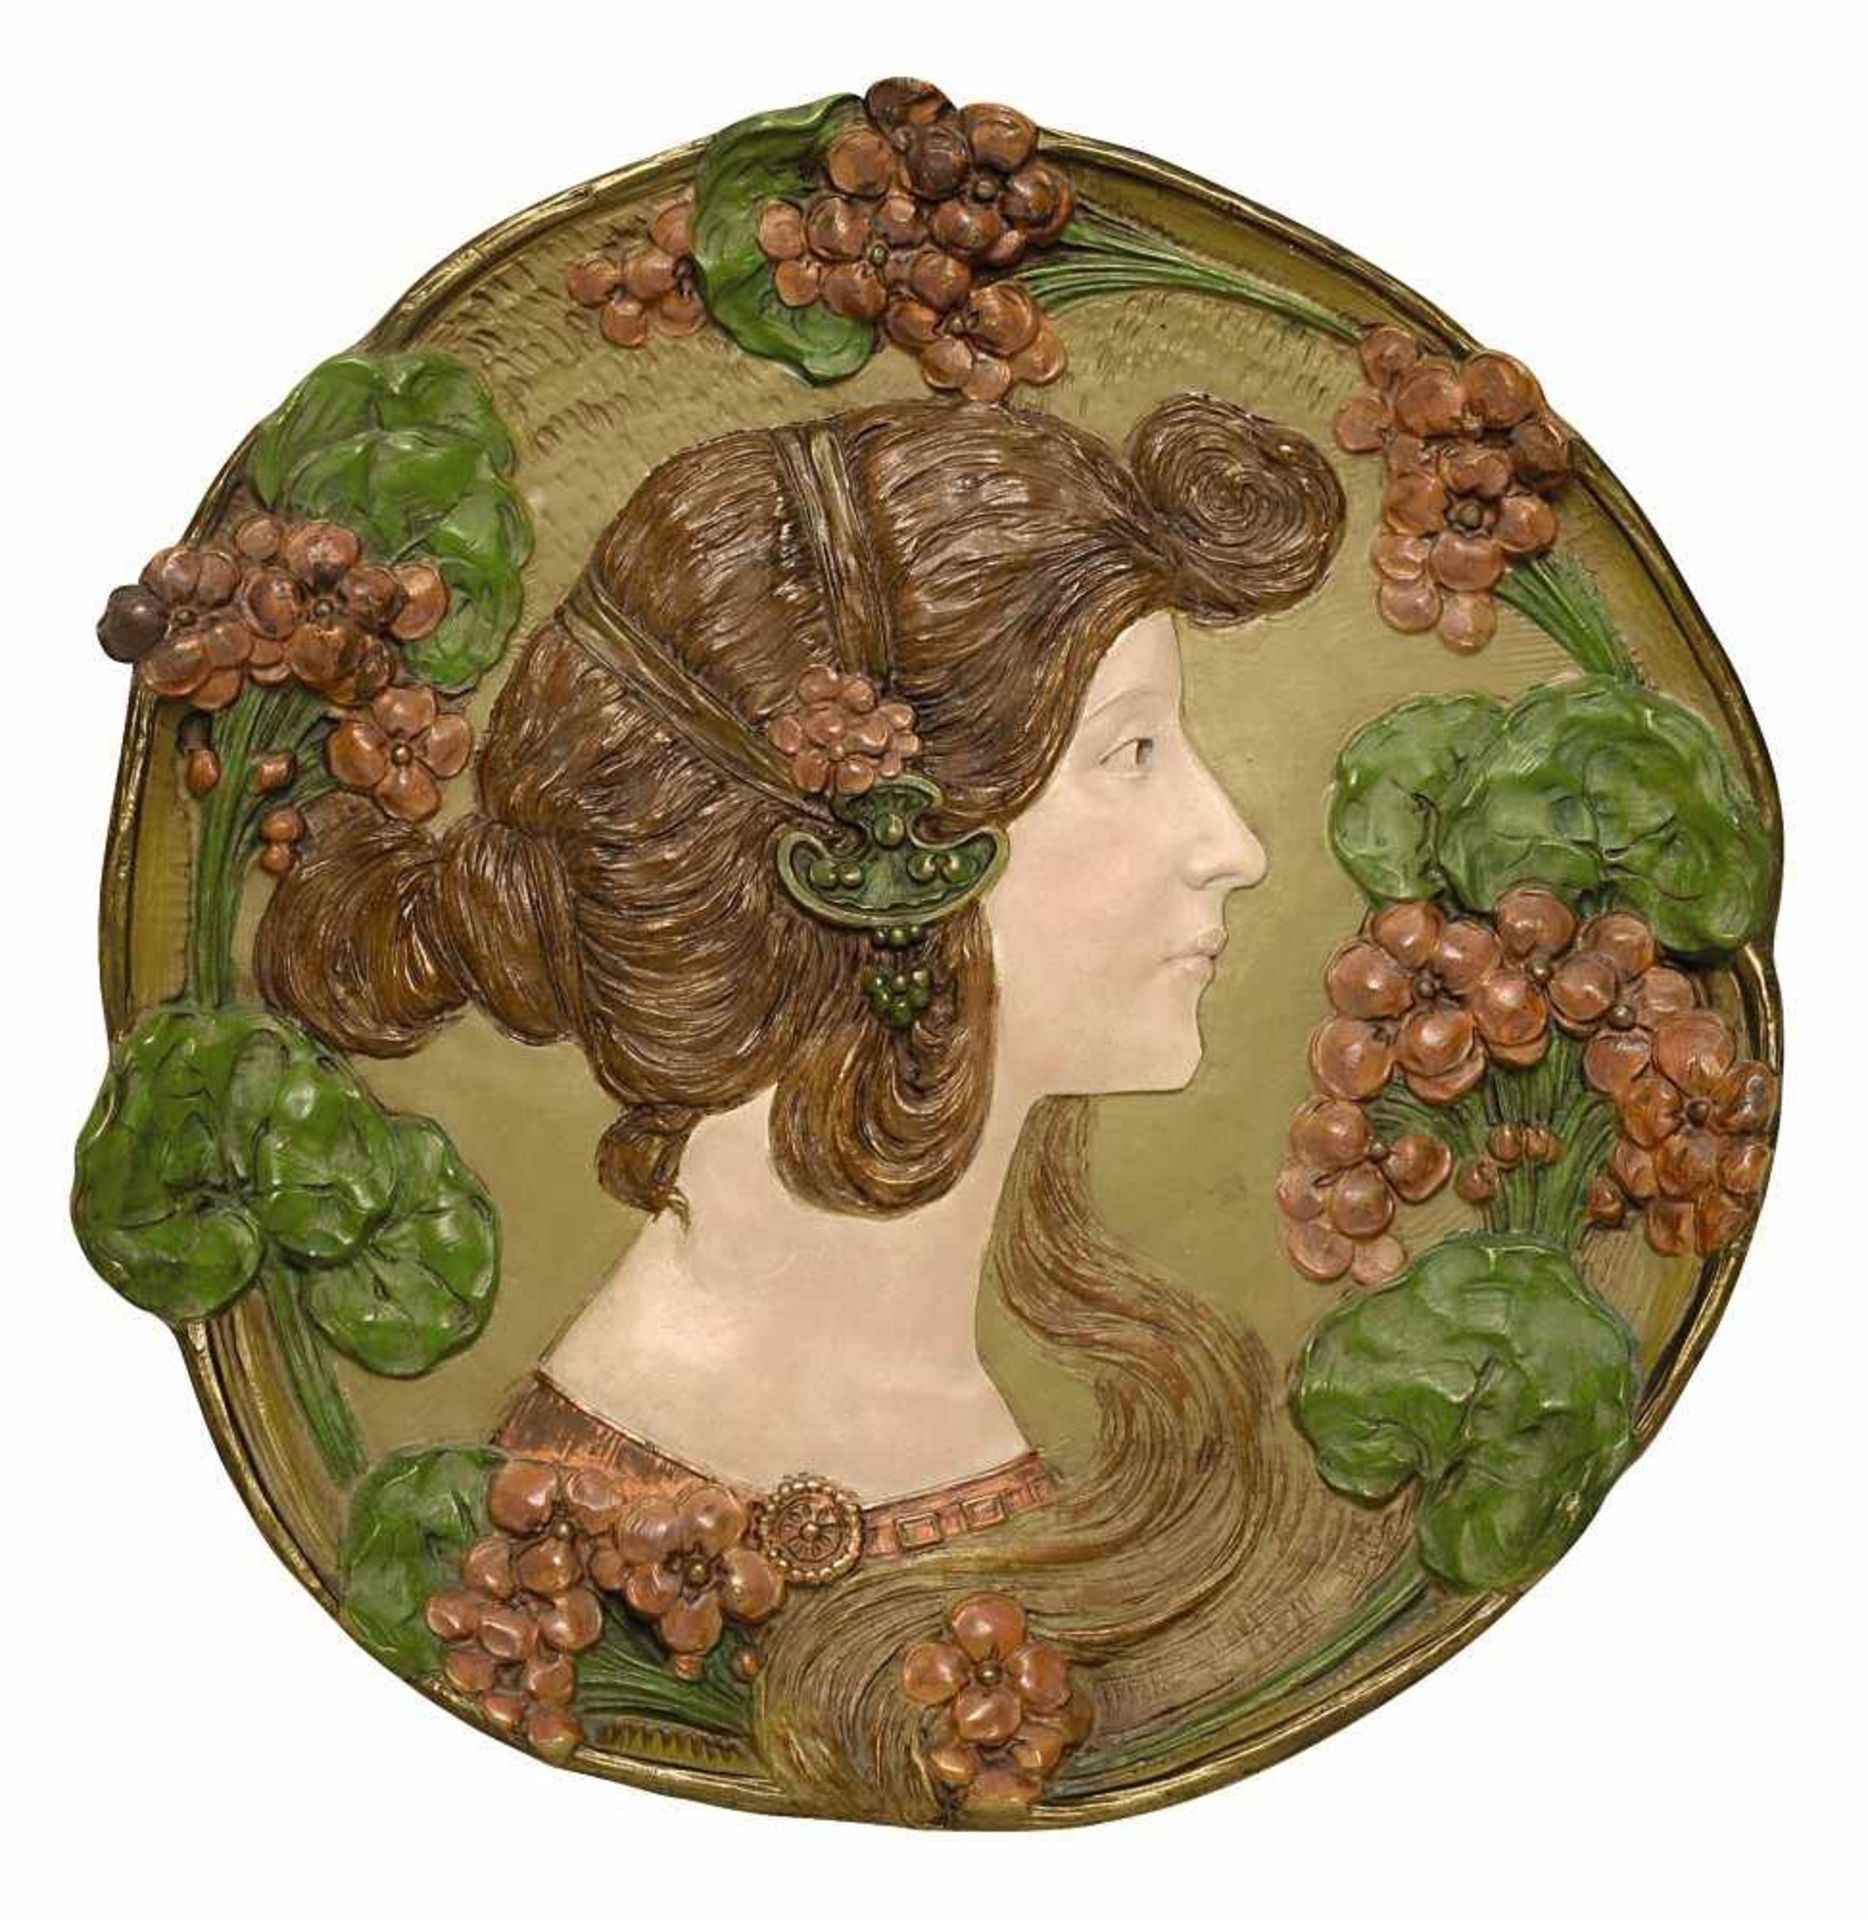 Reliefbild: Bildnis einer jungen Frau Ernst Wahliss, Turn-Wien, um 1900 Keramik, farbig staffiert.